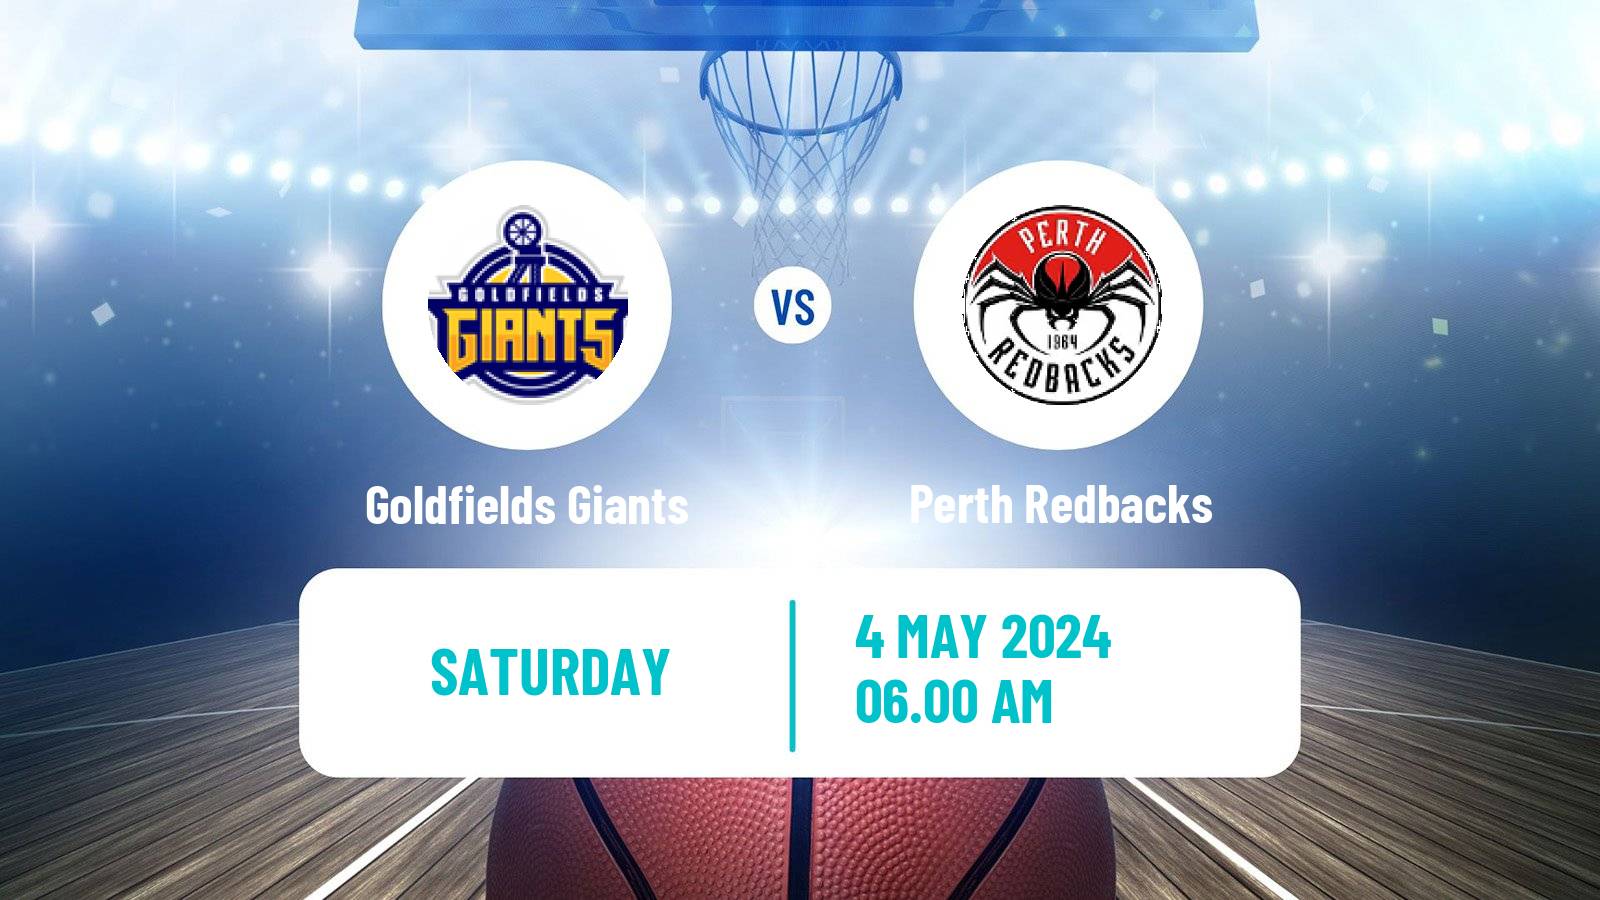 Basketball Australian NBL1 West Women Goldfields Giants - Perth Redbacks